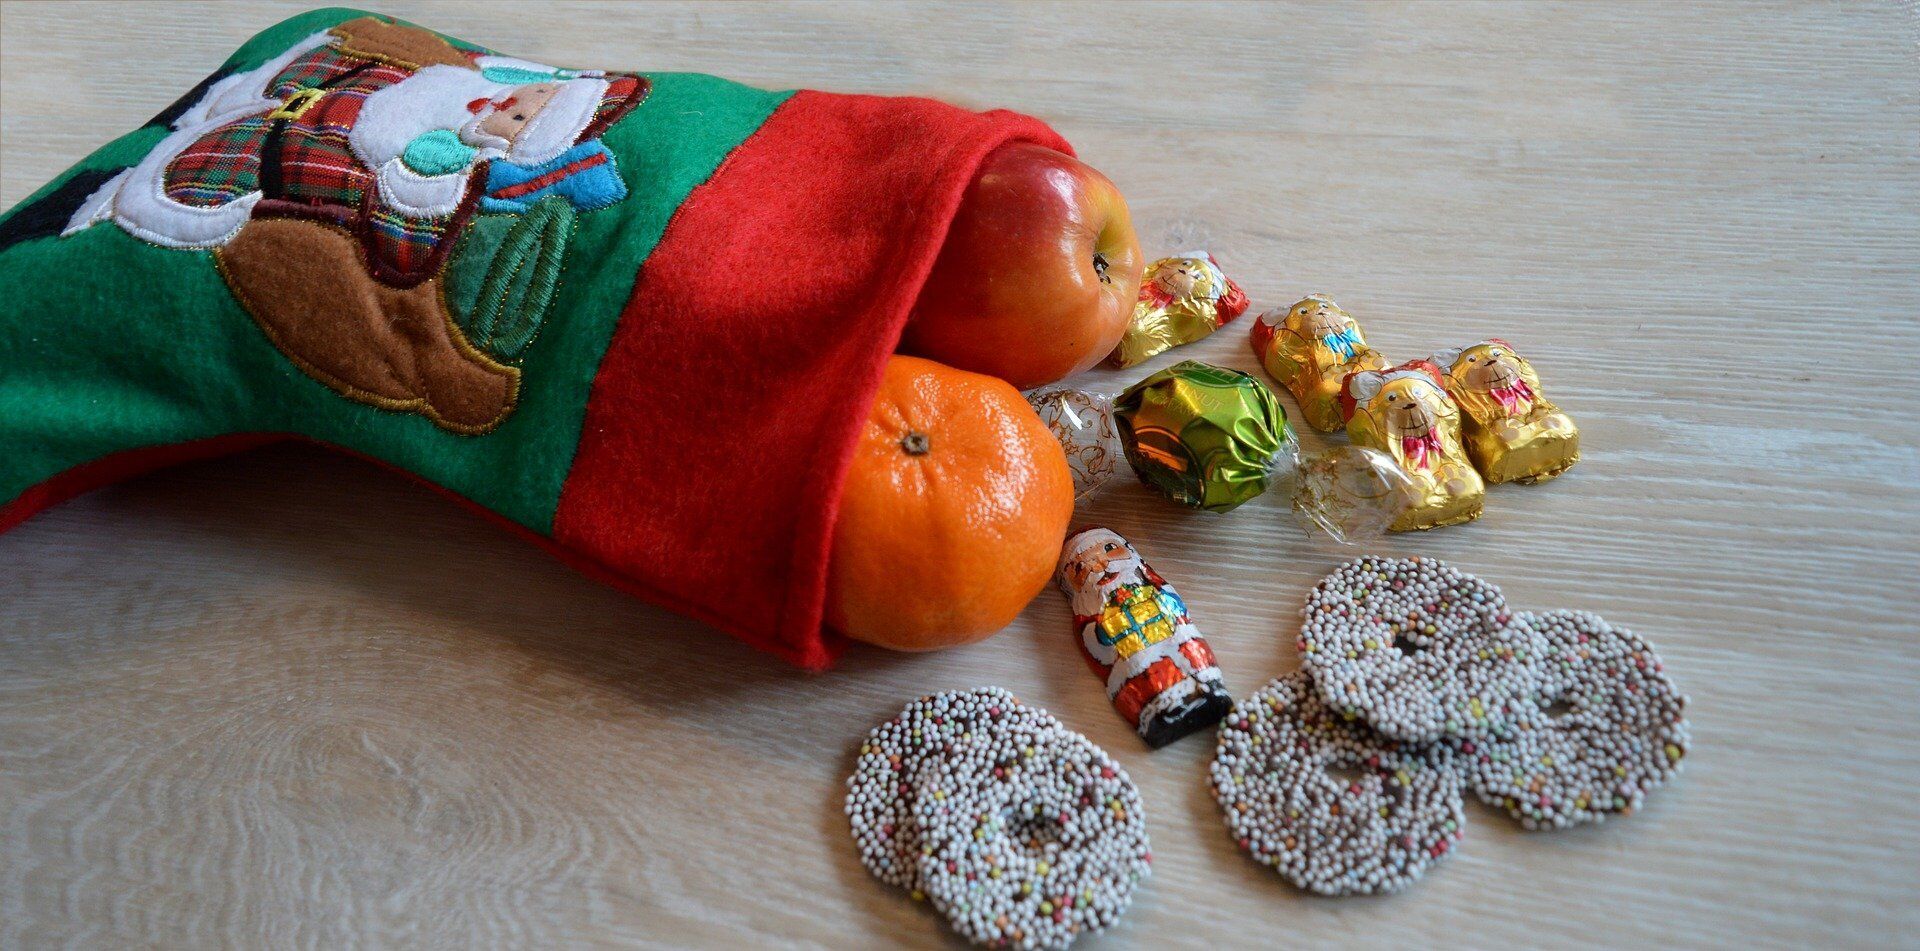 Одна из главных традиций в День Николая в Украине – подарки и сладости для детей